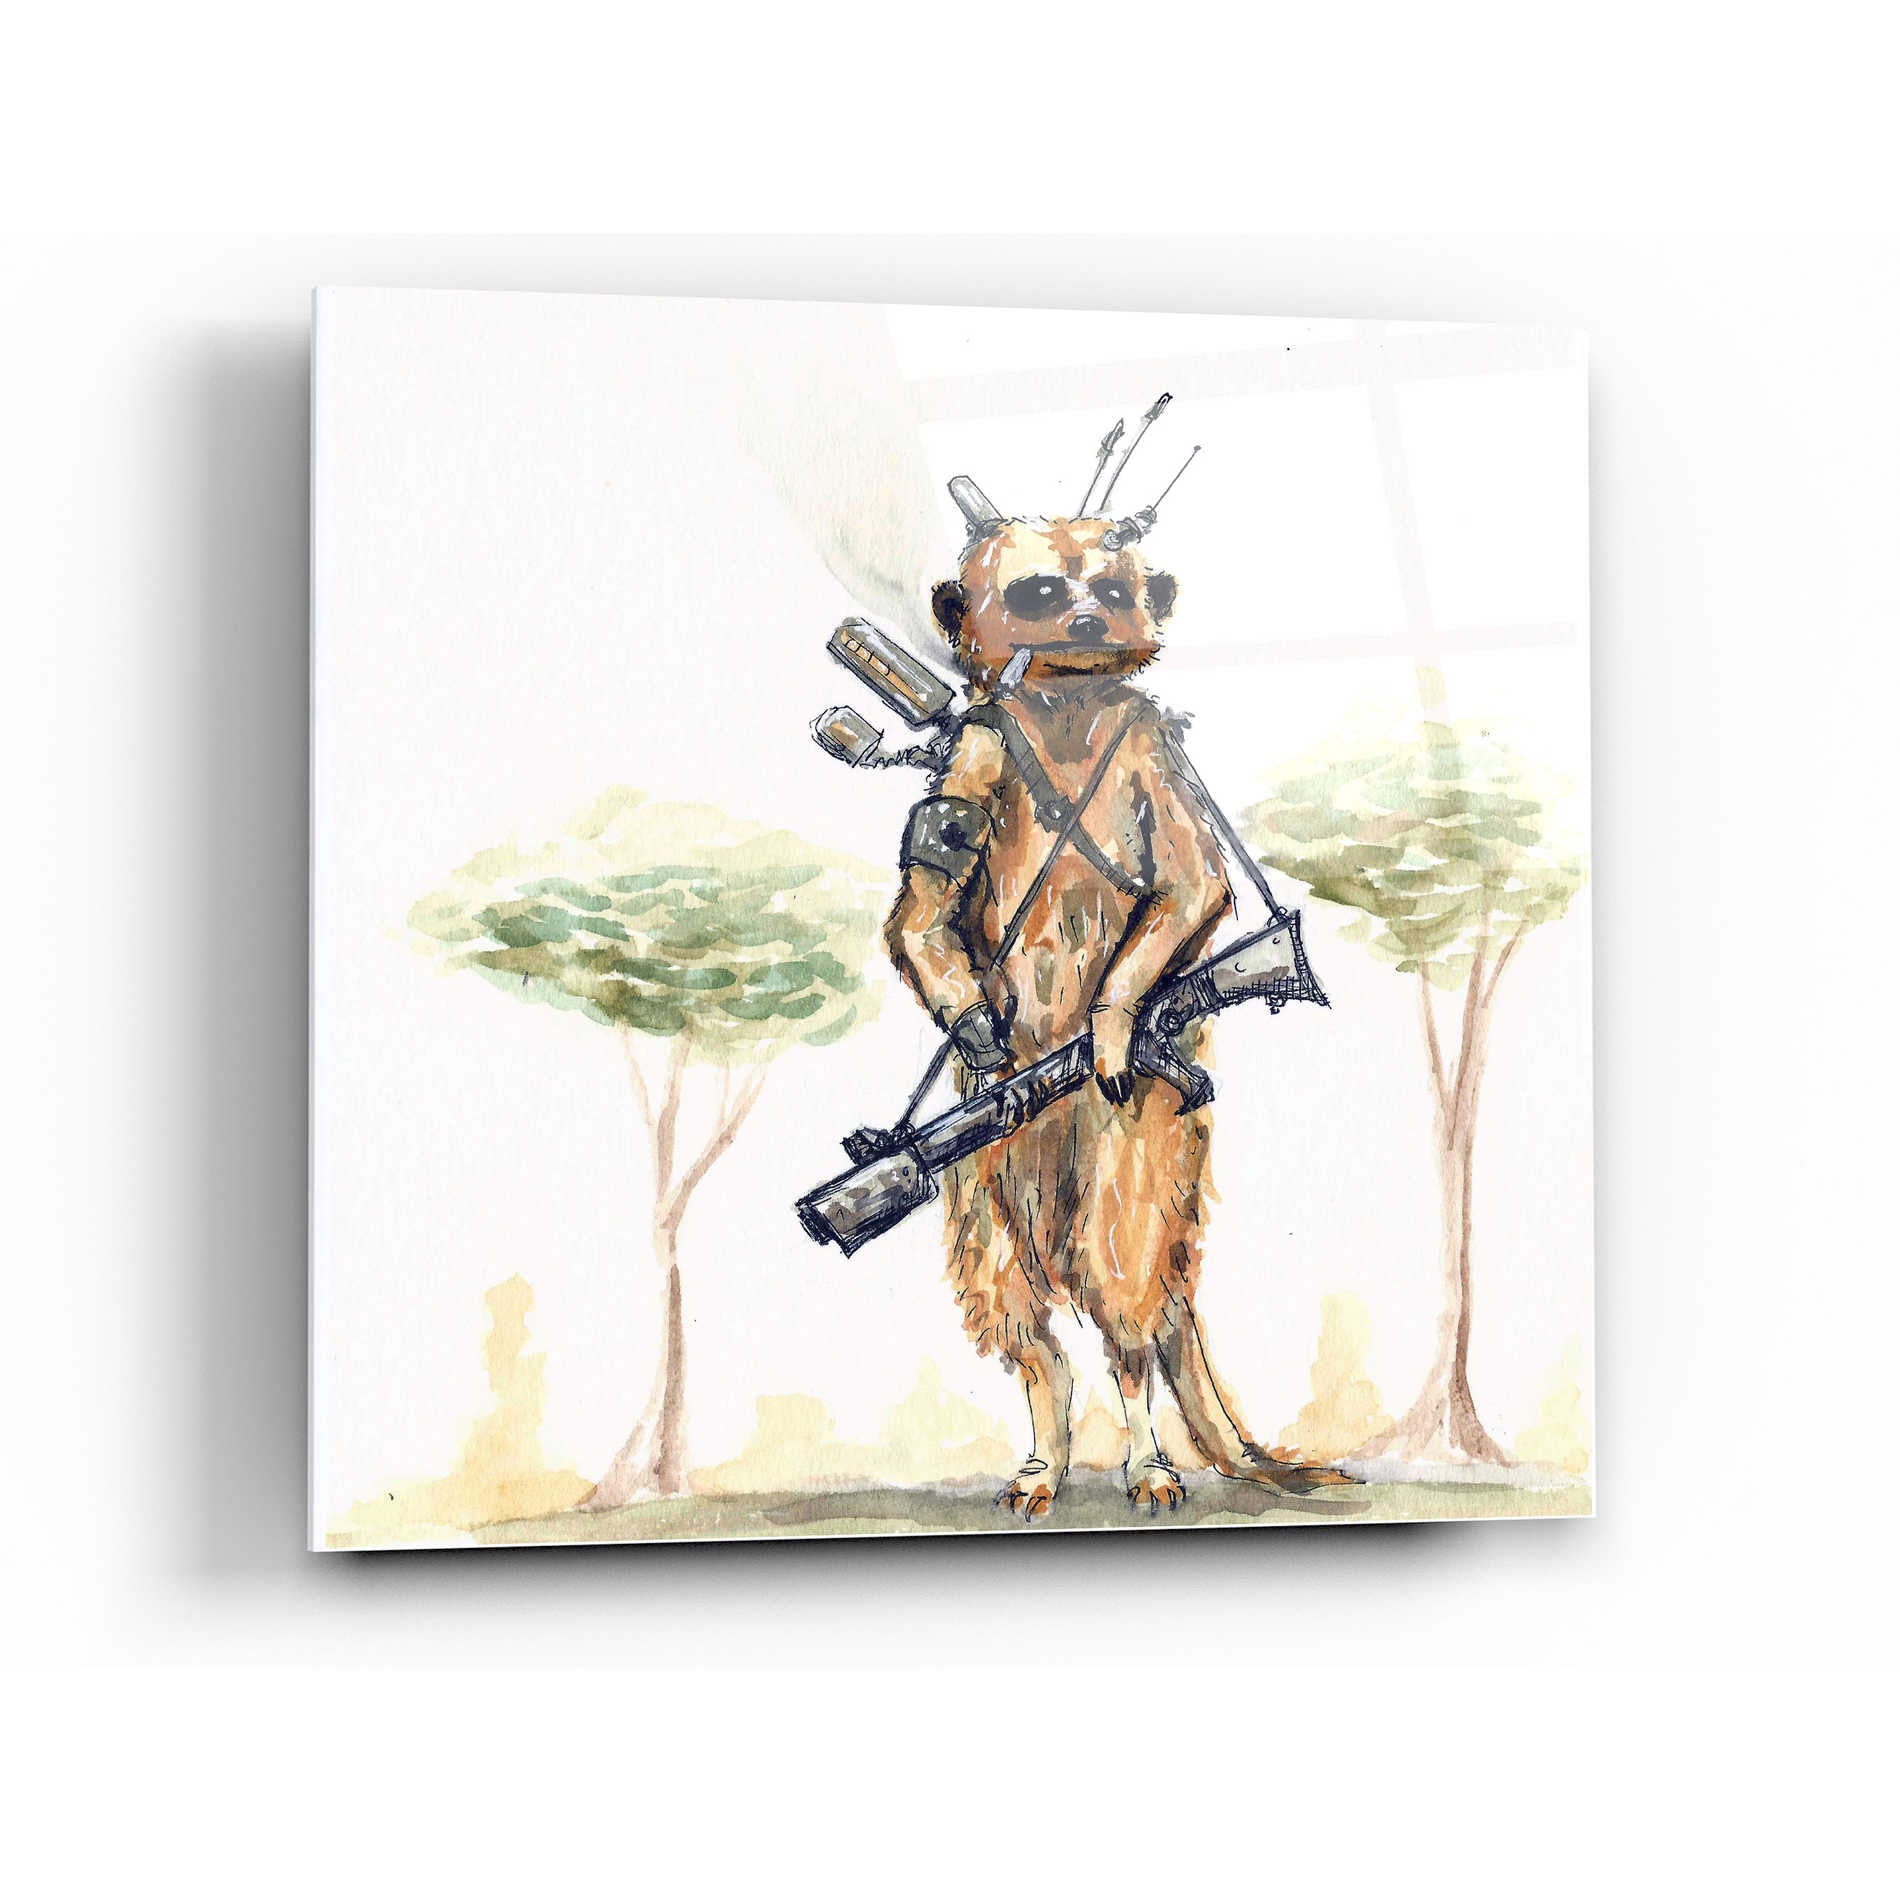 Epic Art 'Meerkat' by Craig Snodgrass, Acrylic Glass Wall Art,24x24